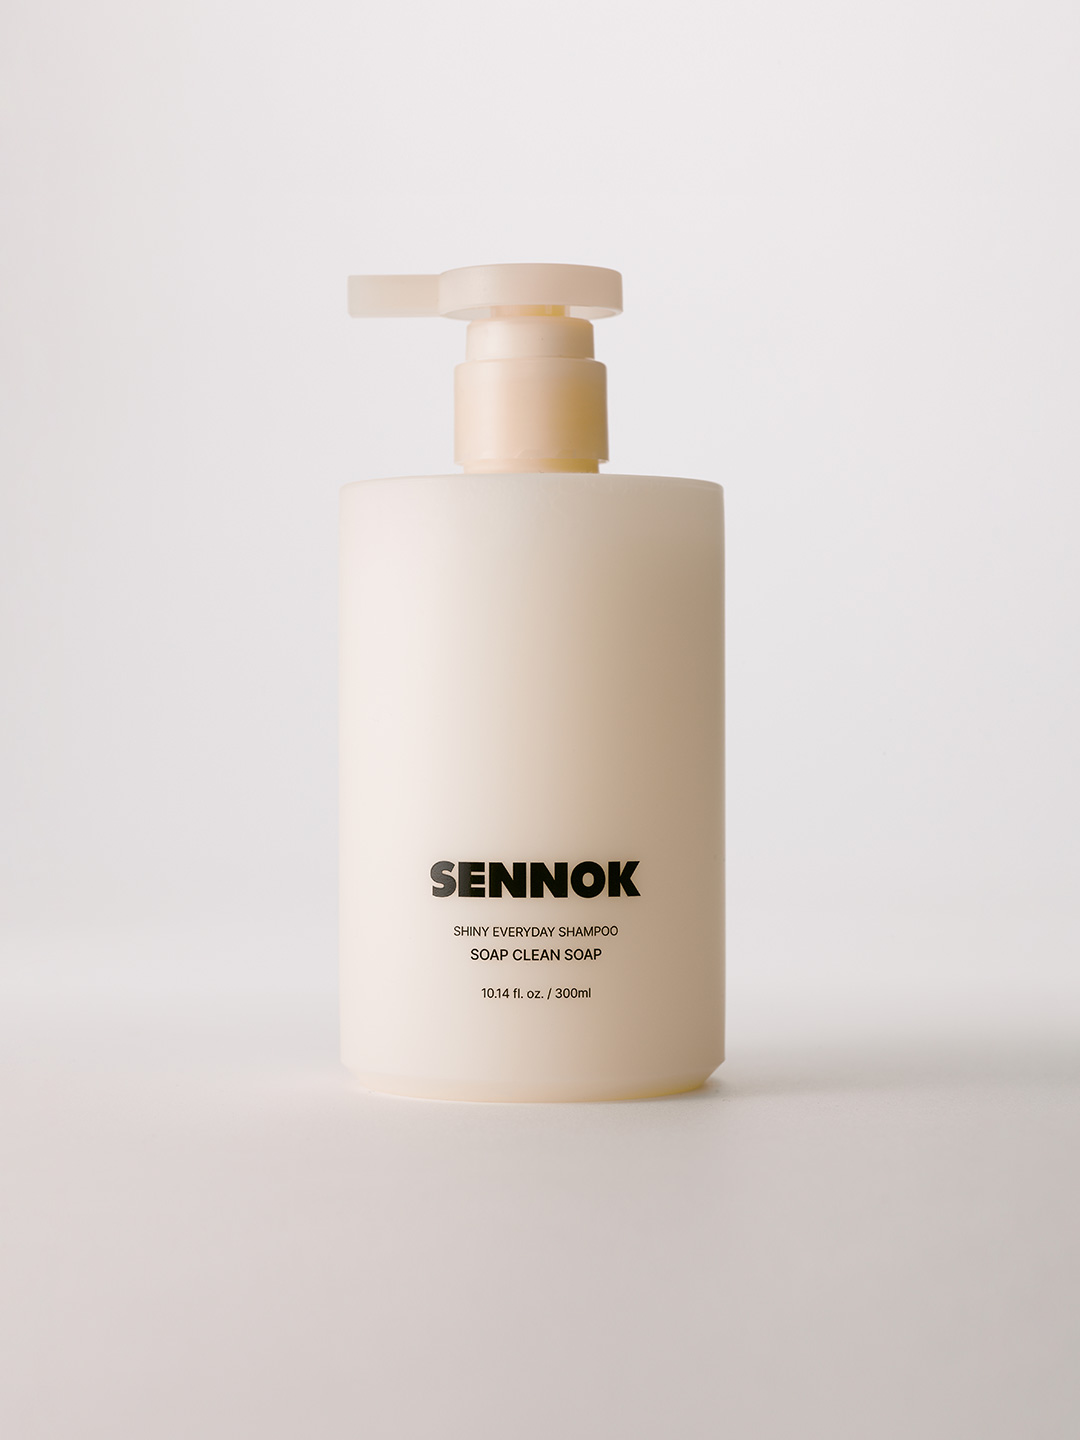 SENNOKSHINY EVERYDAY SHAMPOO SOAP CLEAN SOAP10.14 fl. oz. / 300ml